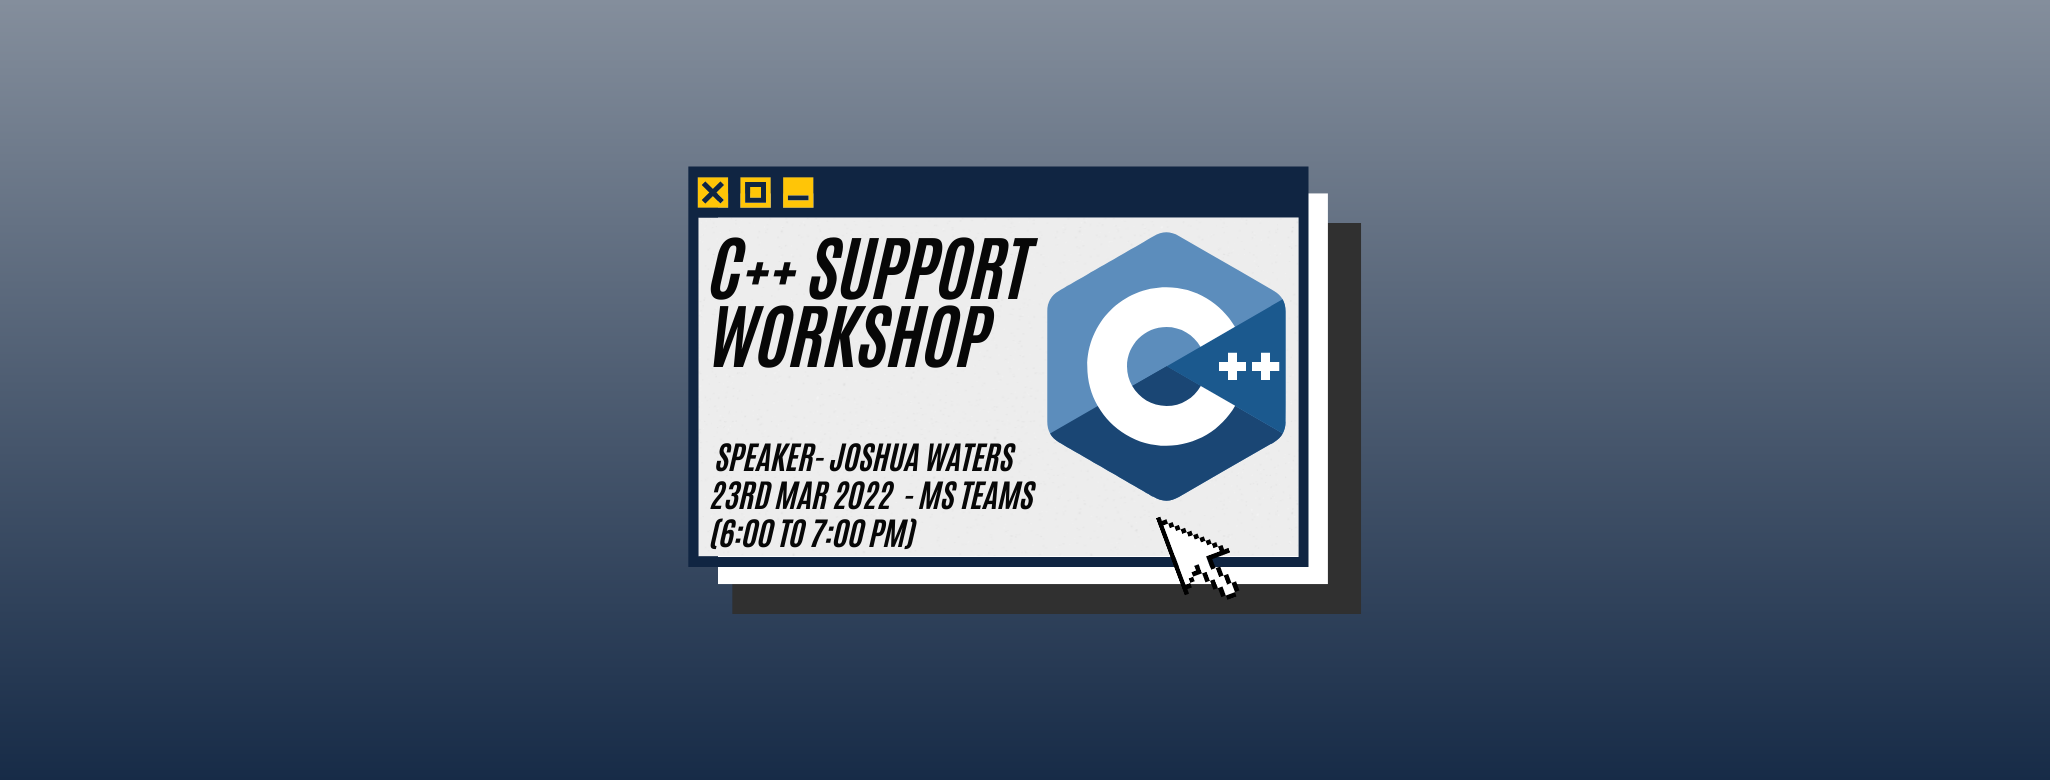 C++ Support Workshop Banner